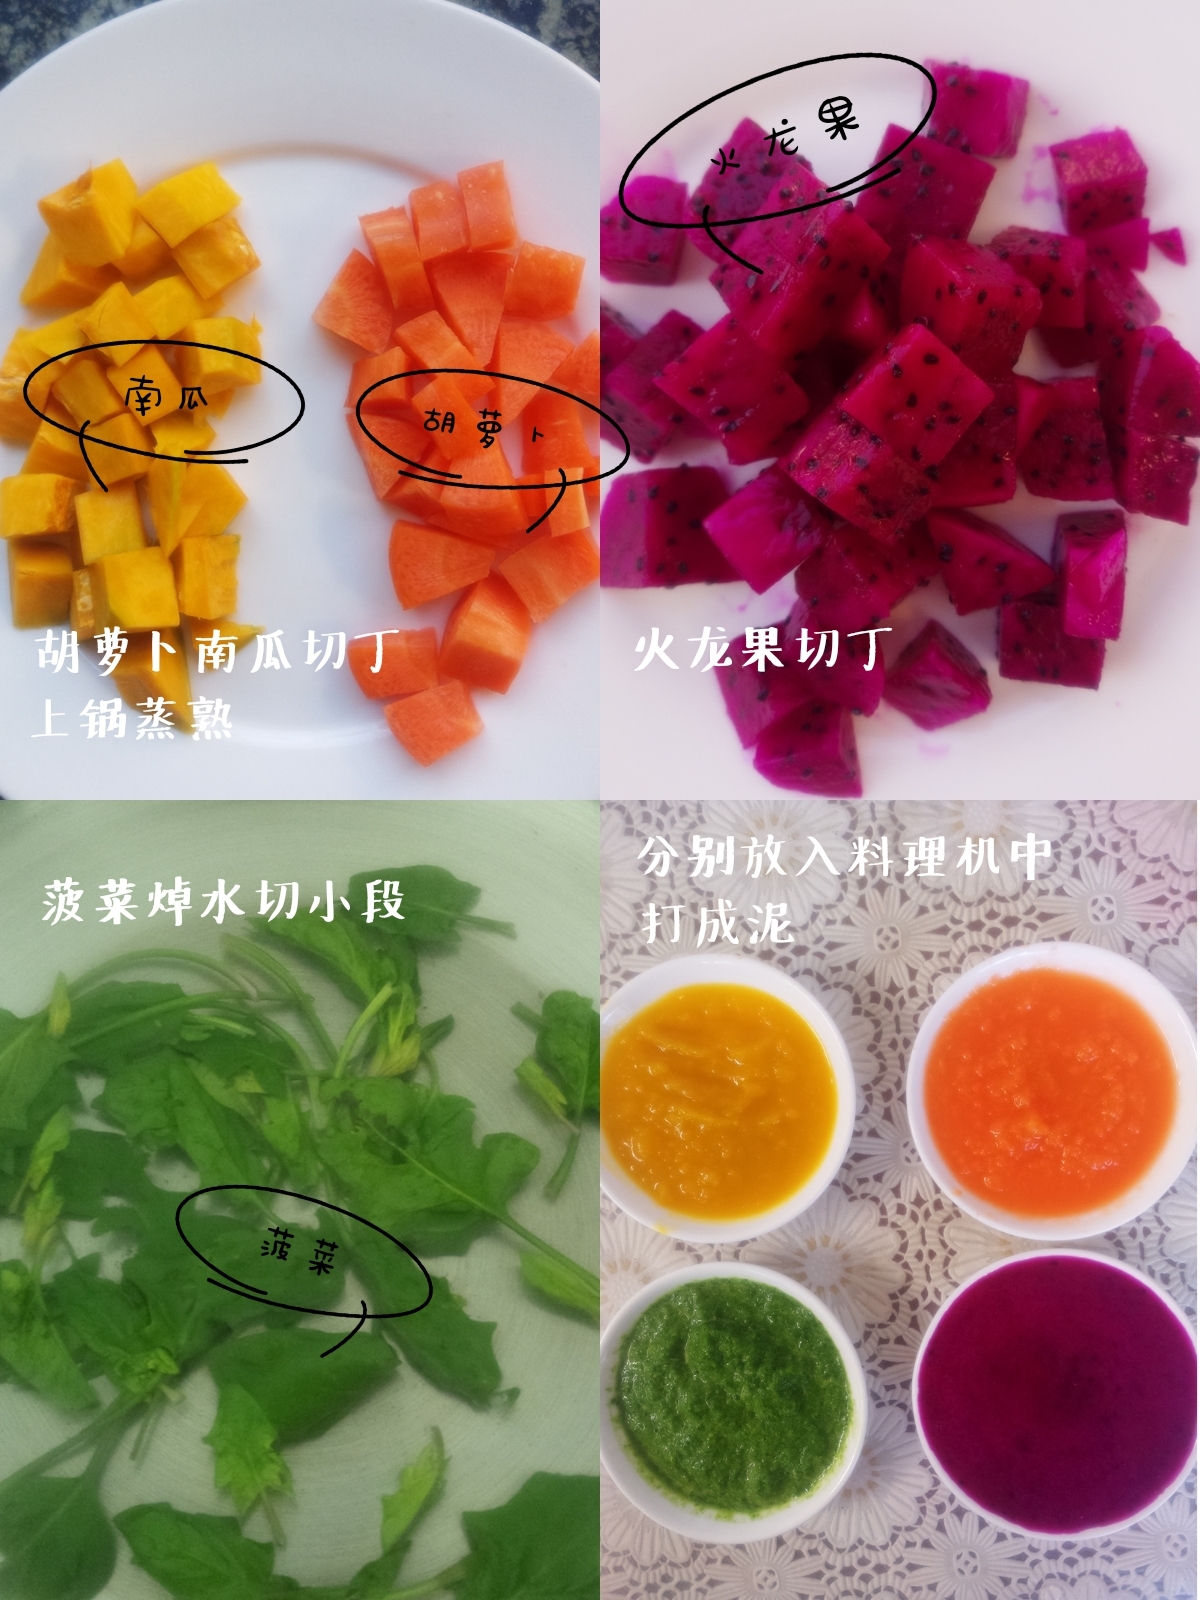 菠菜果蔬面怎么做_菠菜果蔬面的做法_豆果美食